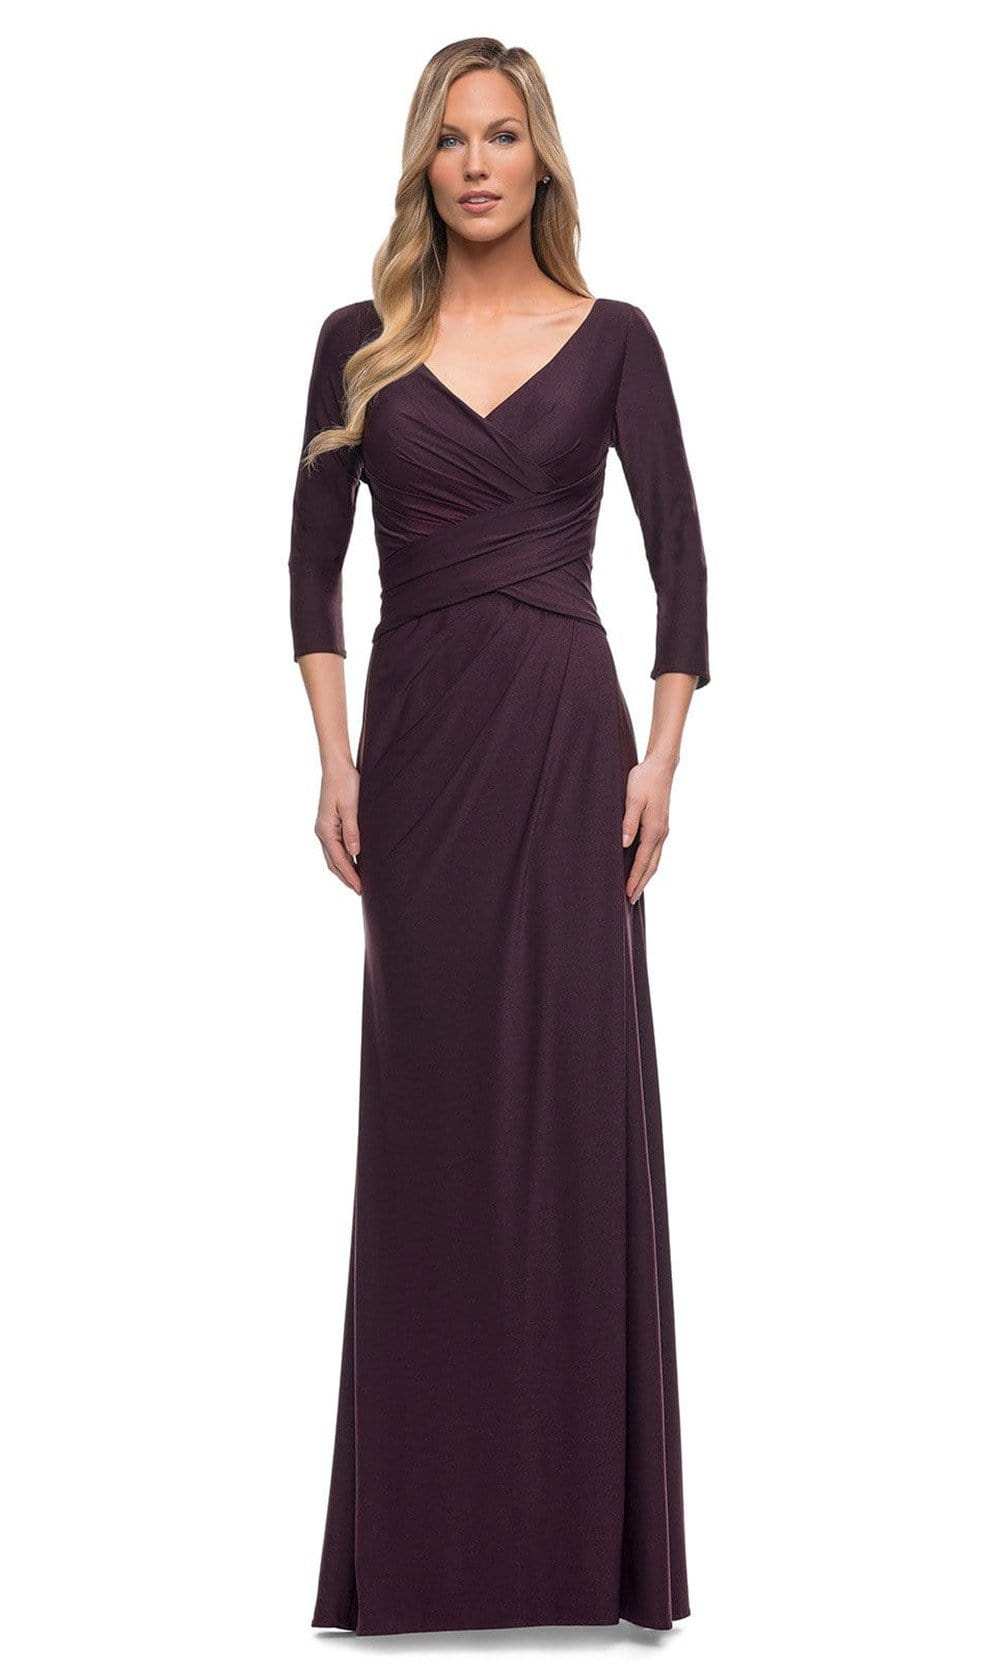 La Femme - 29223 Fitted V-Neck Evening Dress Mother of the Bride Dresses 4 / Dark Garnet